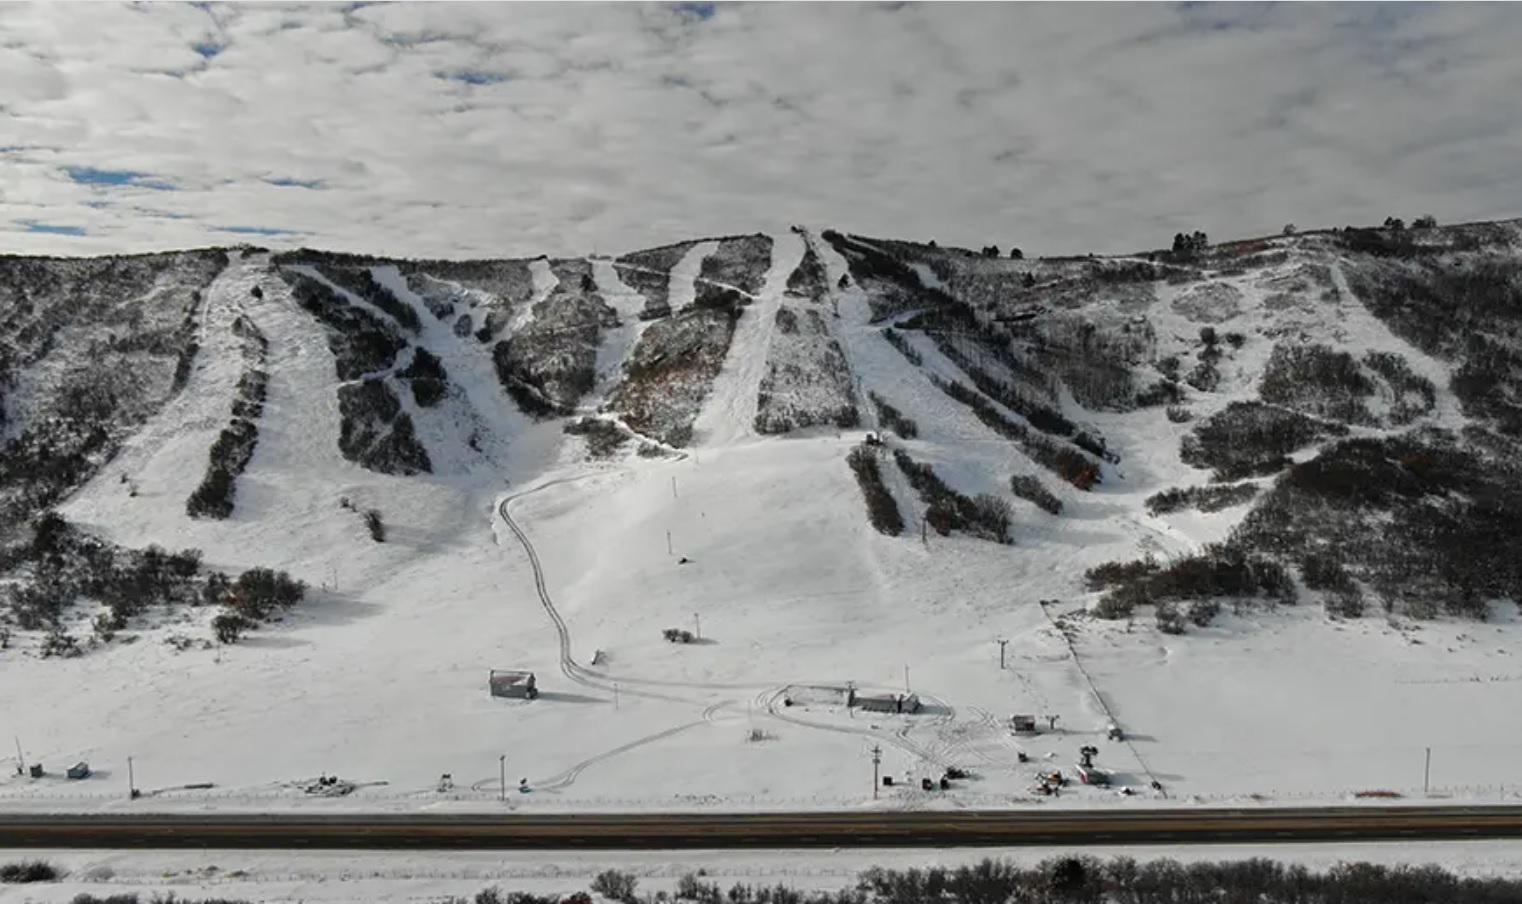 SKI RESORT Hesperus Ski Resort Colorado